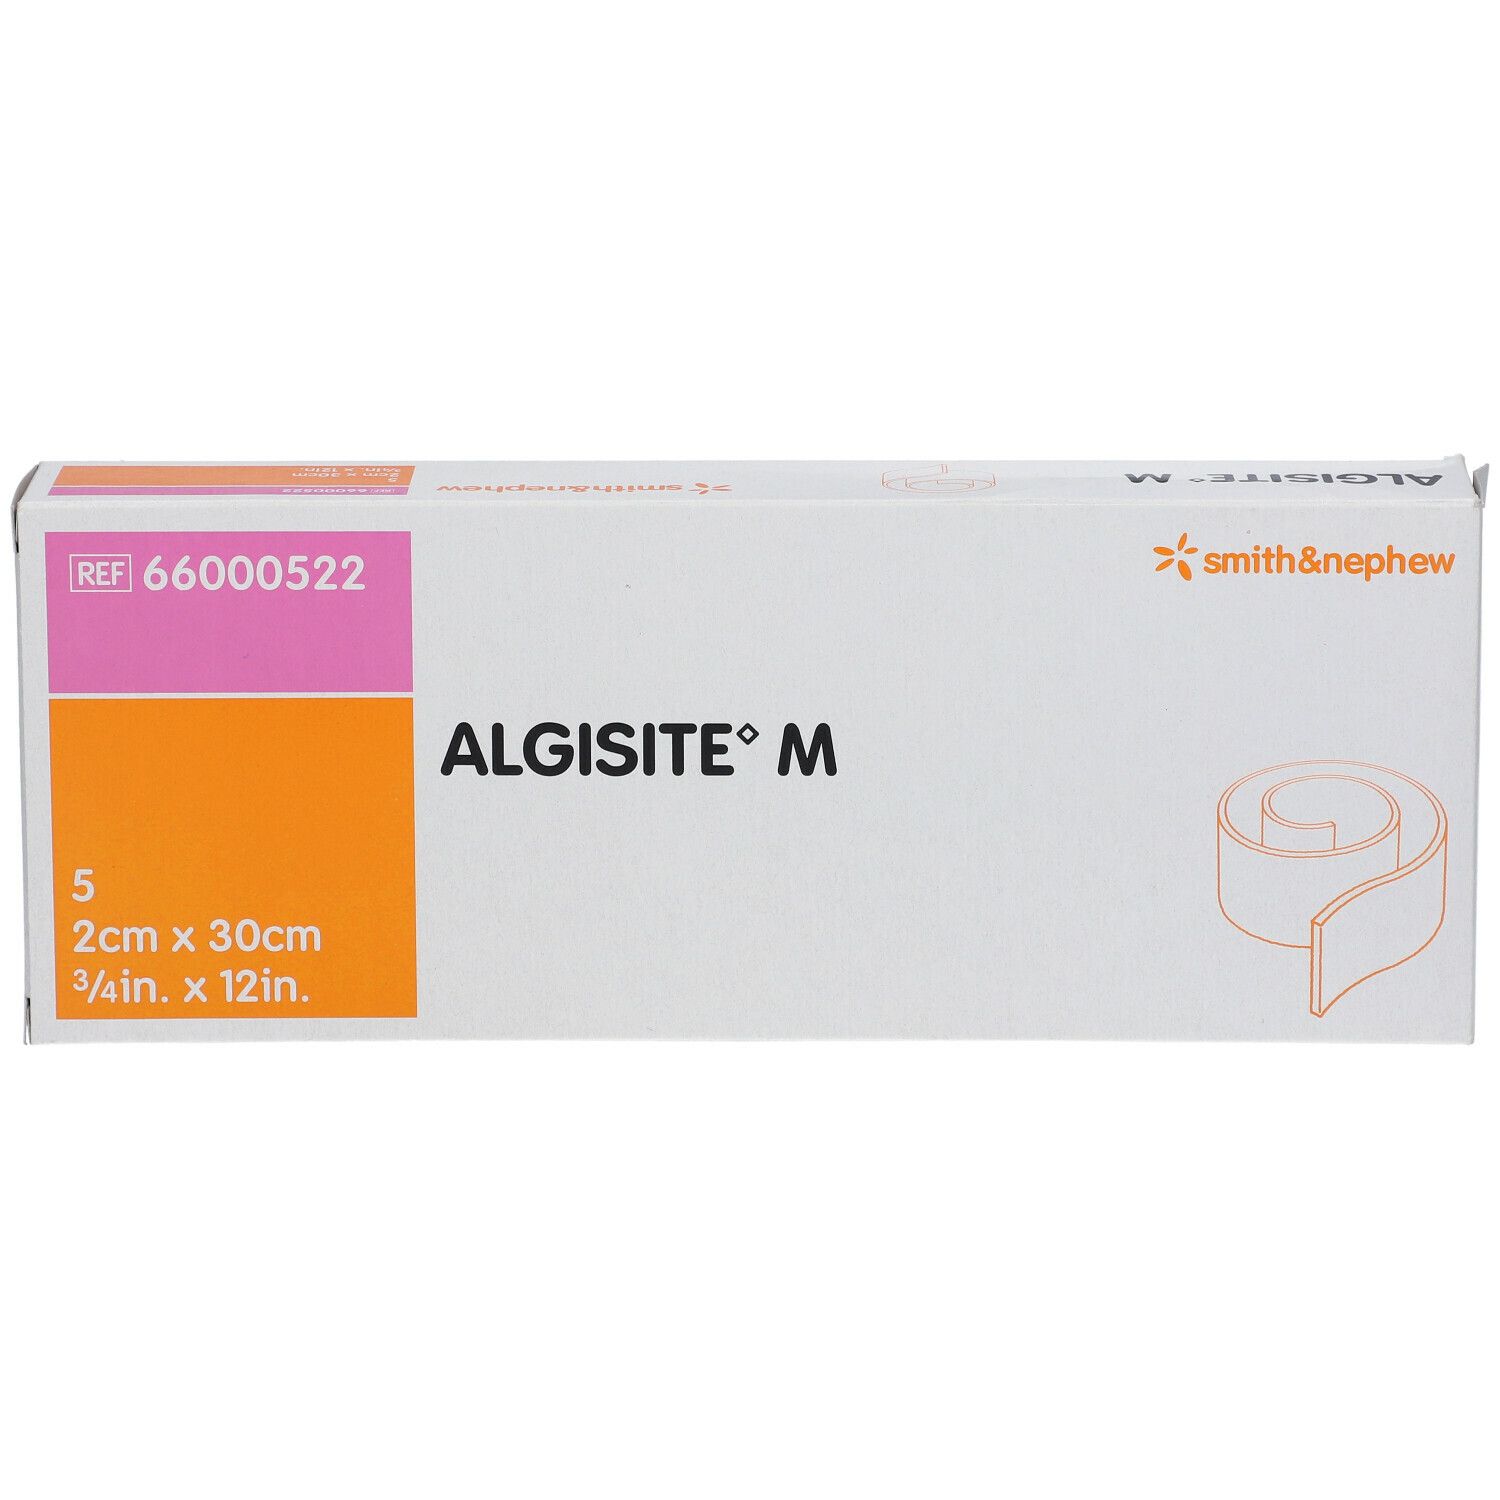 ALGISITE® M Calciumalginat Wundaufl. steril 2 x 30 cm